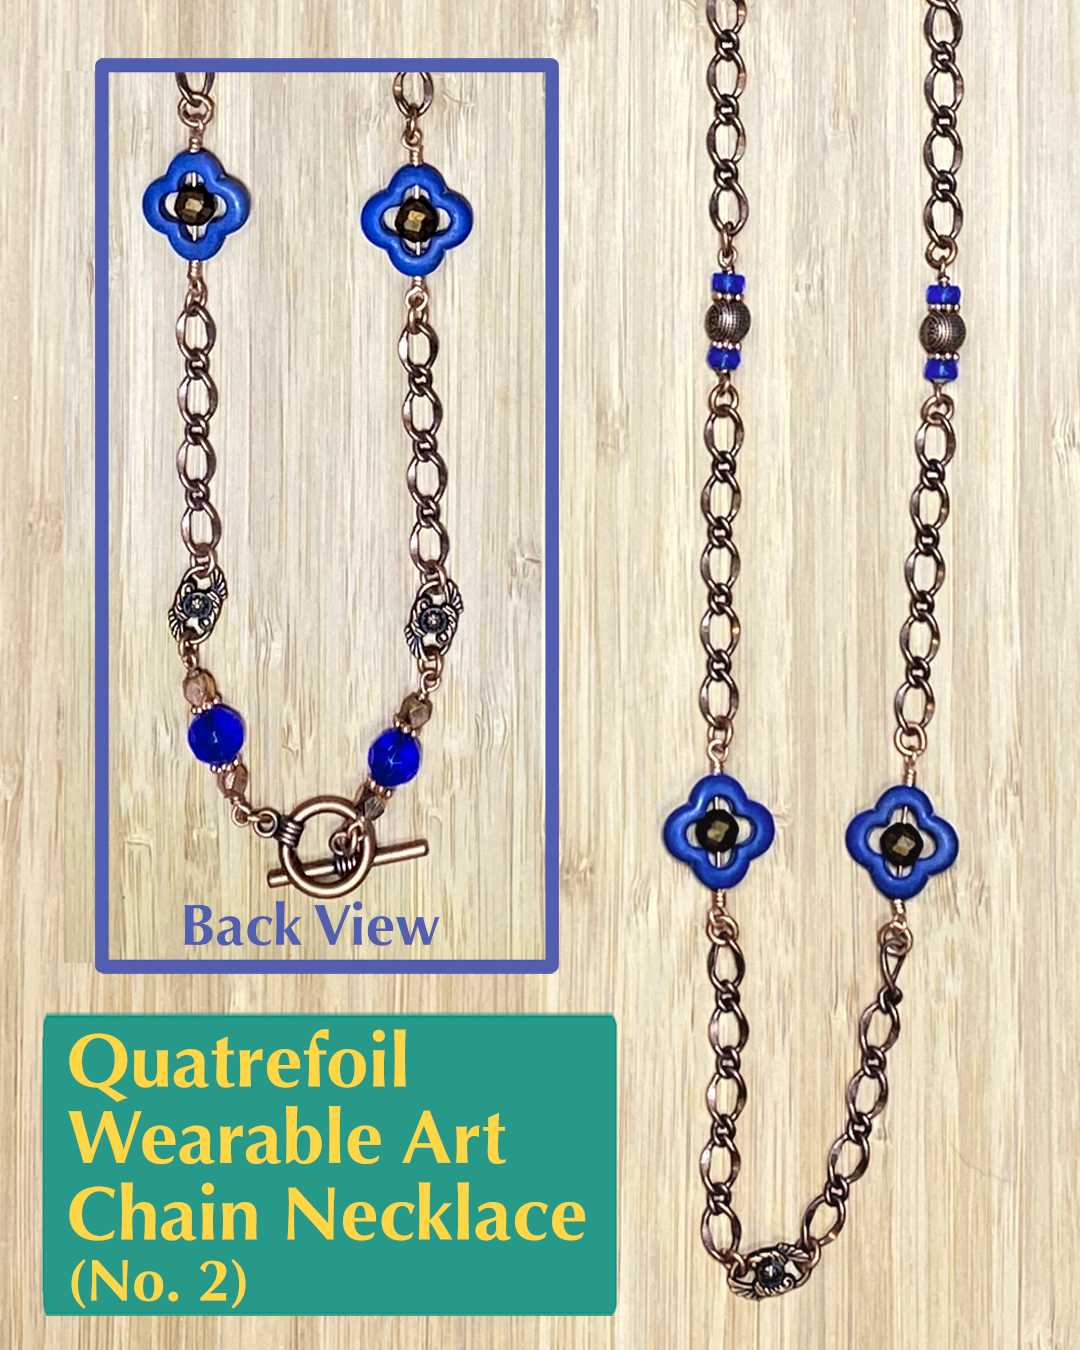 Quatrefoil Wearable Art Chain Necklace No. 2